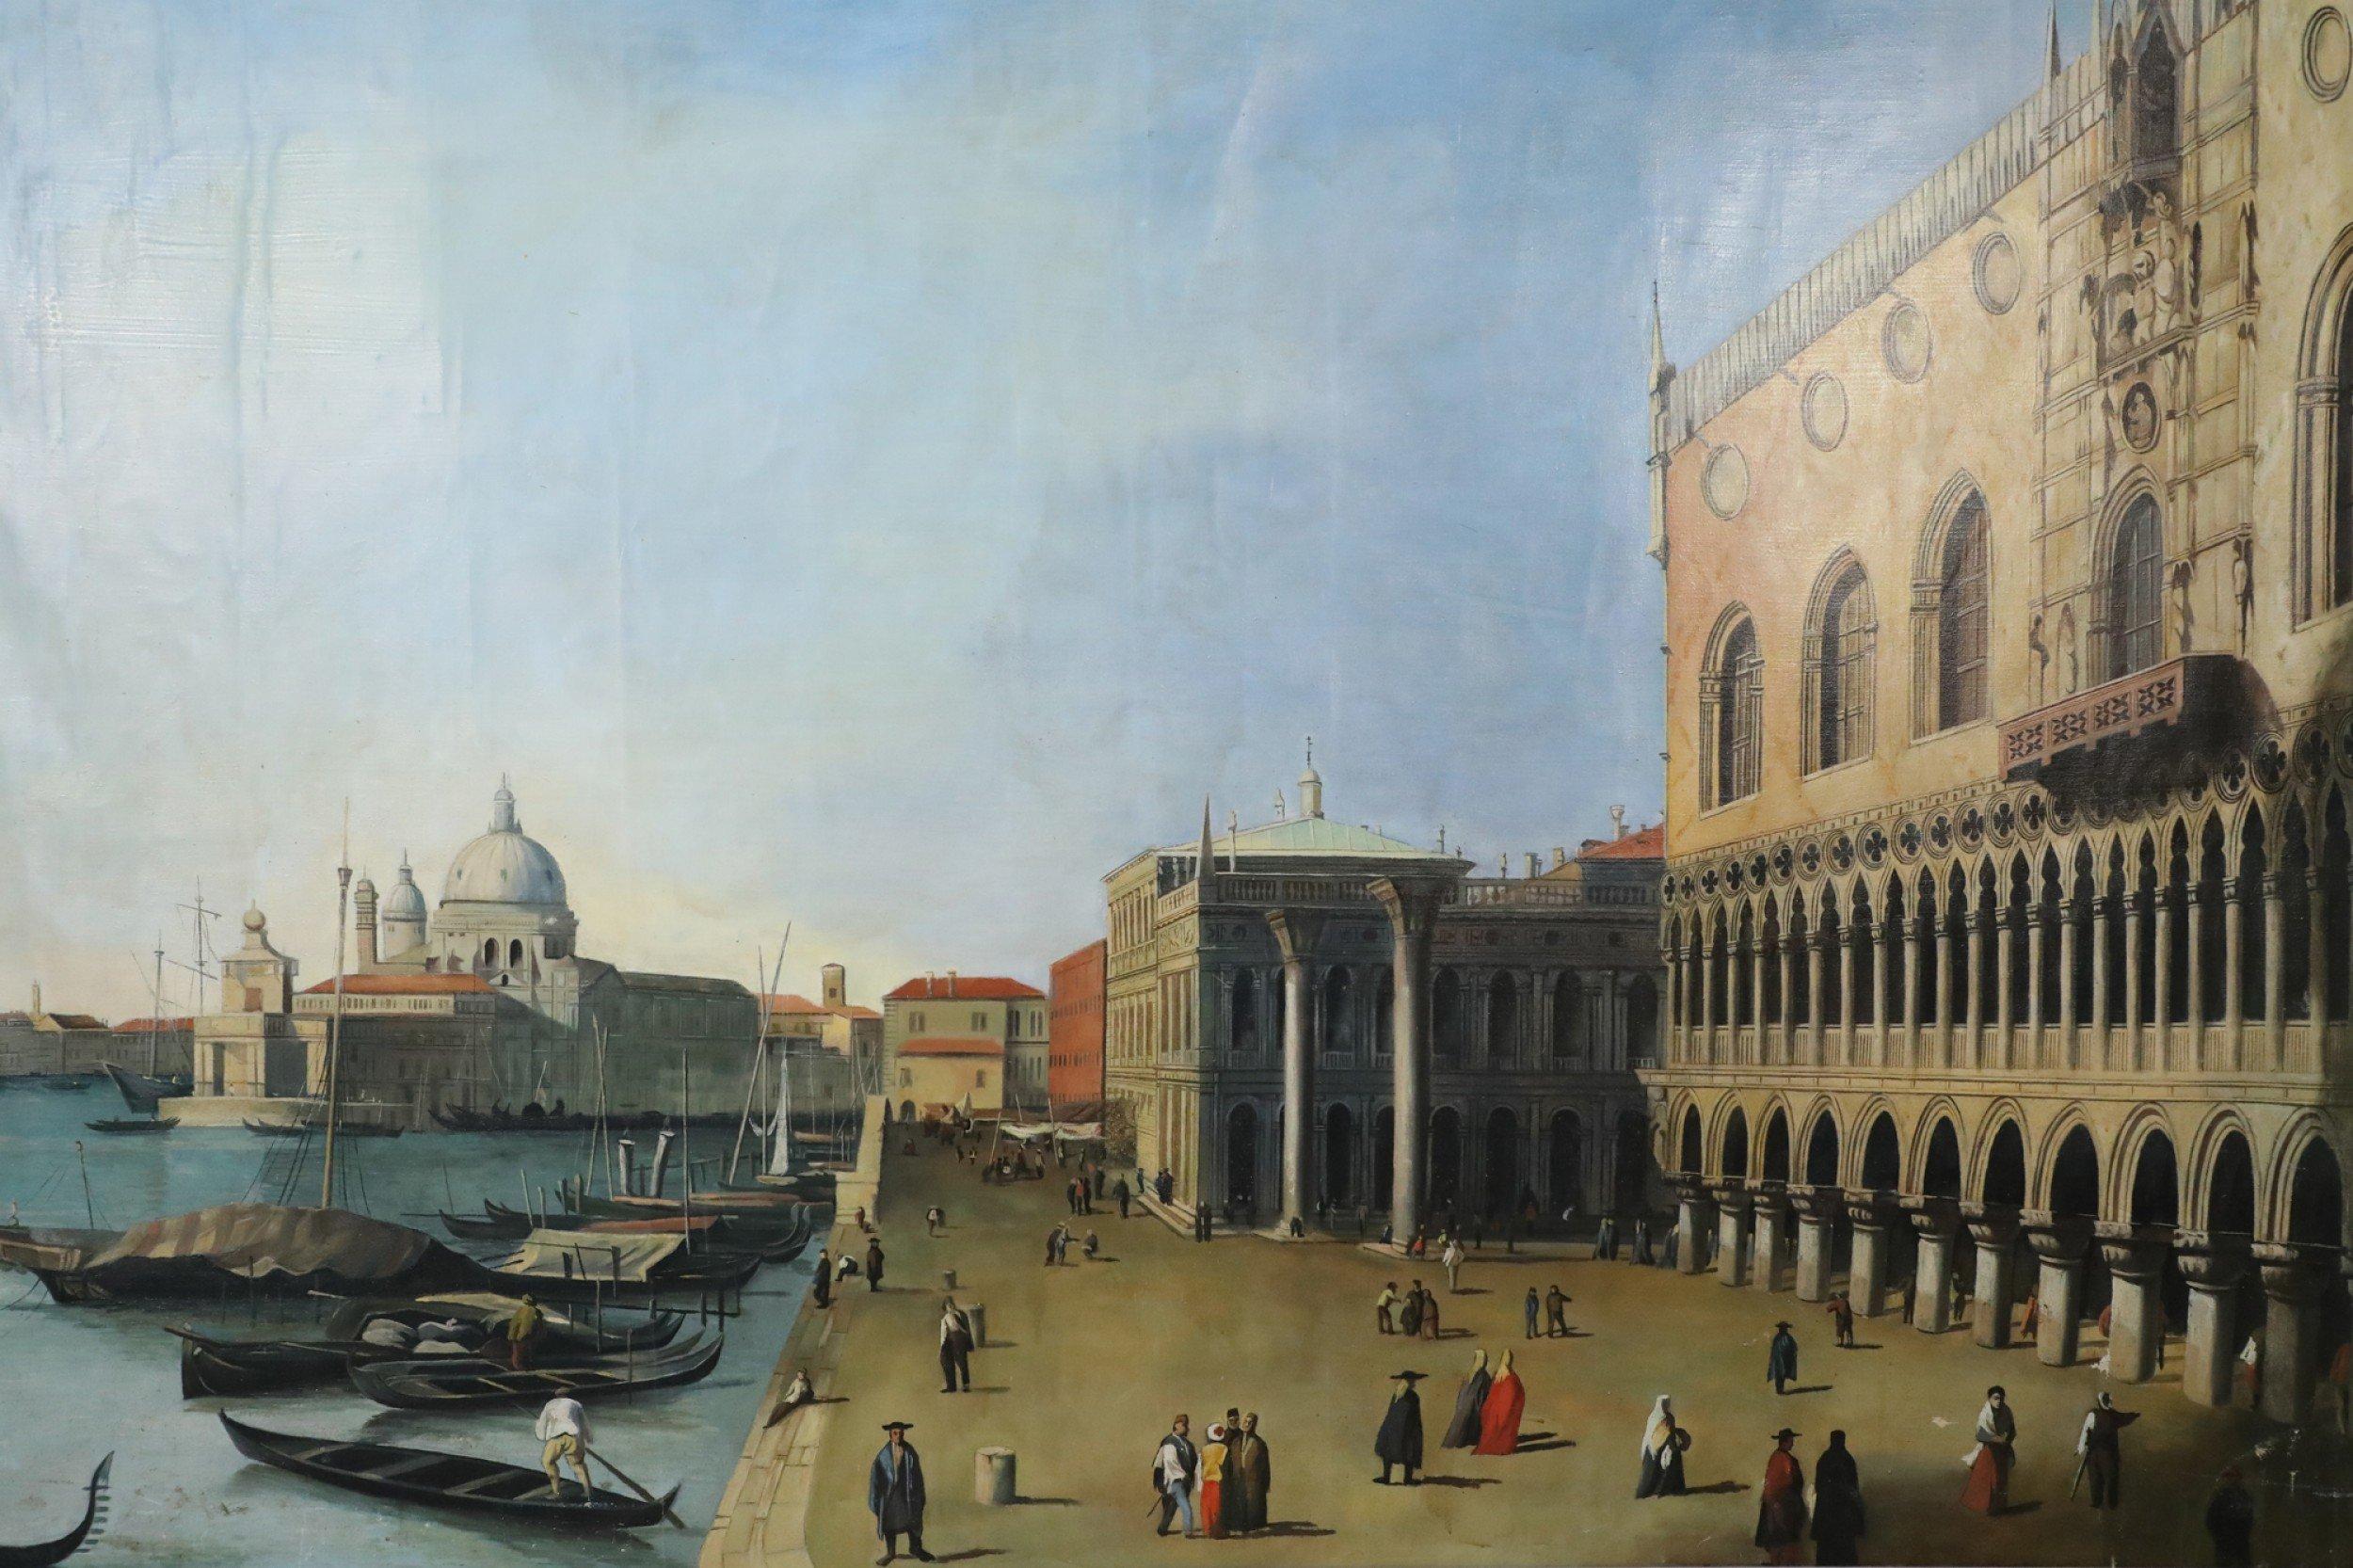 Vintage-Gemälde im venezianischen Stil (20. Jahrhundert), das die gotische Architektur des berühmten Dogenpalastes aus dem 14. Jahrhundert von der Seite zeigt, während sich überall Figuren bewegen, Gondeln am Rande des Kanals vertäut sind und die